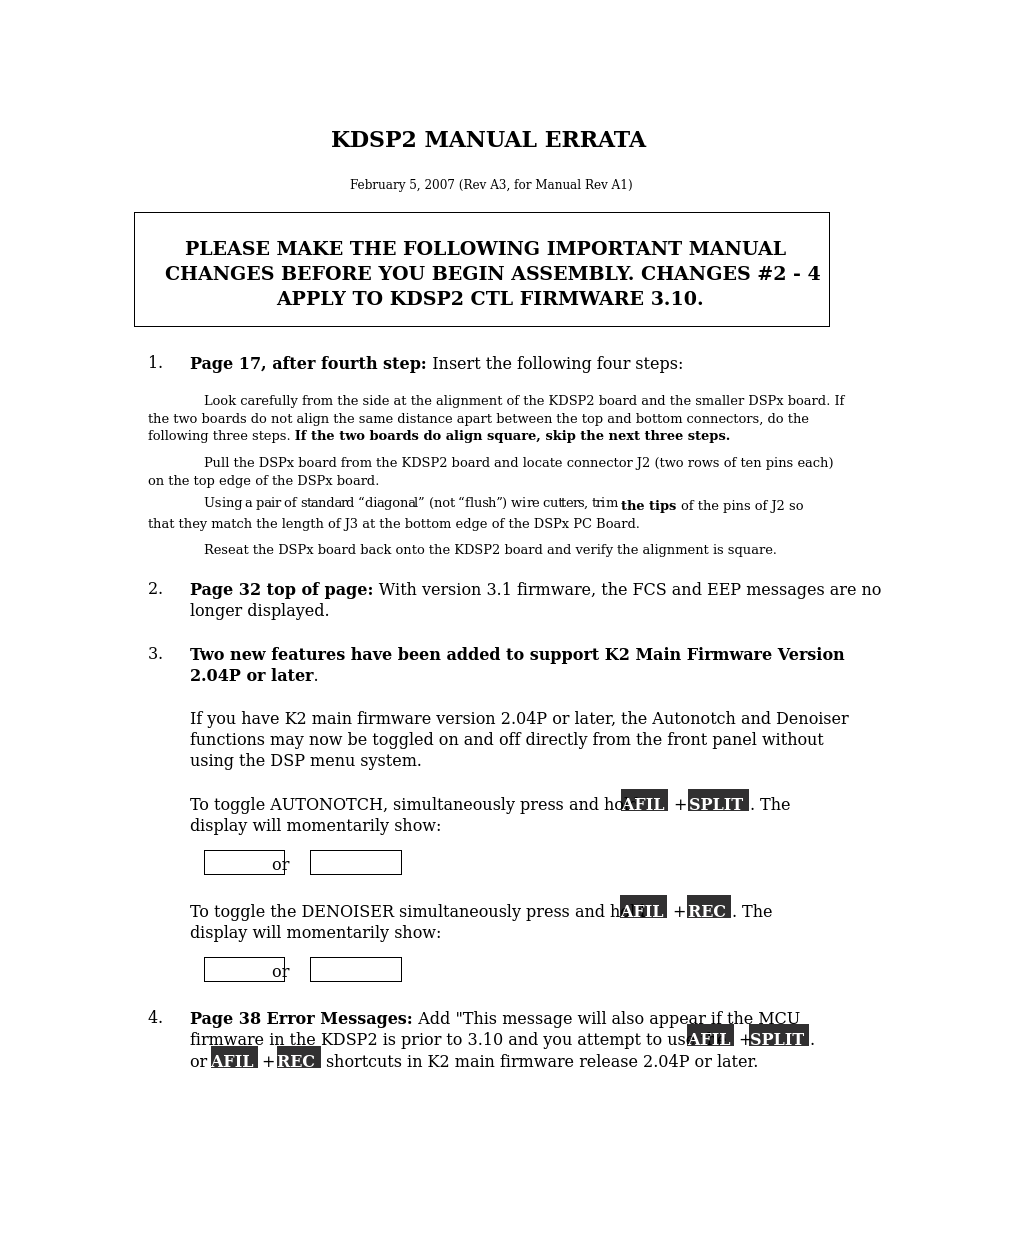 KDSP2 Manual Errata